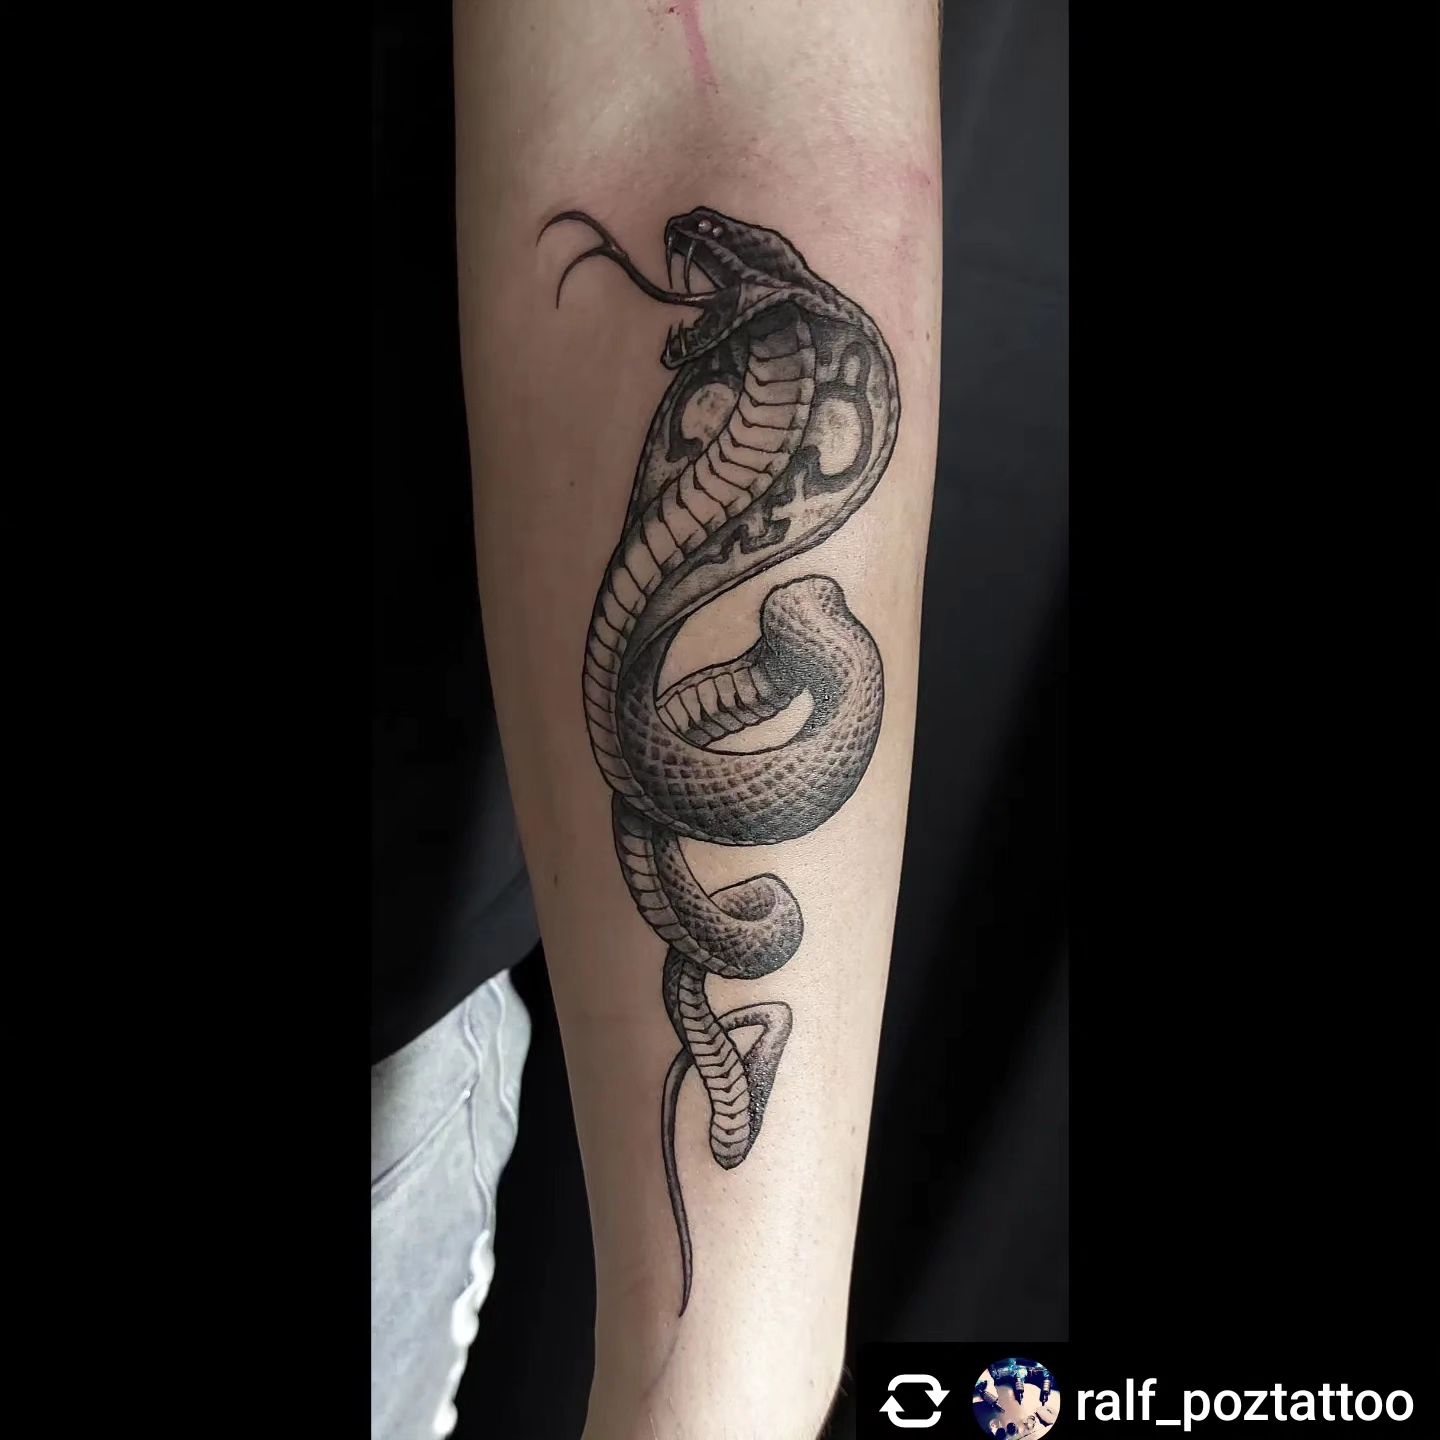 Schlange von @ralf_poztattoo

#tattoo#snaketattoo#freywerk #tattoocologne #black